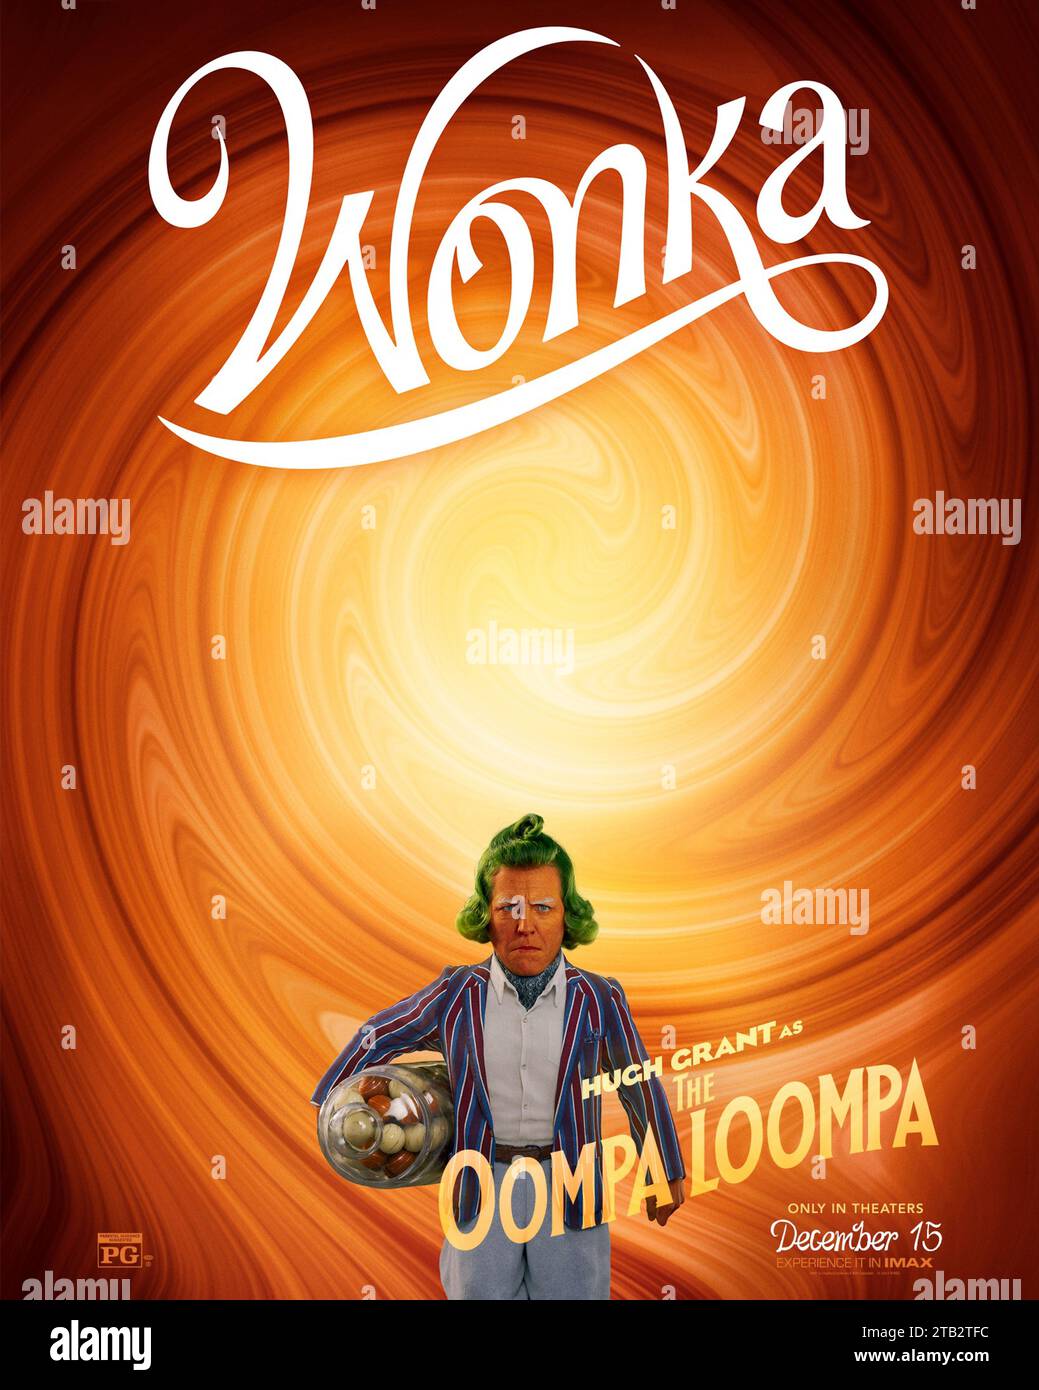 Wonka (2023) von Paul King mit Hugh Grant als Oompa Loompa. Prequel über das frühe Leben von Willie Wonka, der beliebten Kinderfigur aus Roald Dahl's Charlie und der Schokoladenfabrik. Poster mit US-Zeichen***NUR FÜR REDAKTIONELLE ZWECKE***. Quelle: BFA / Warner Bros Stockfoto